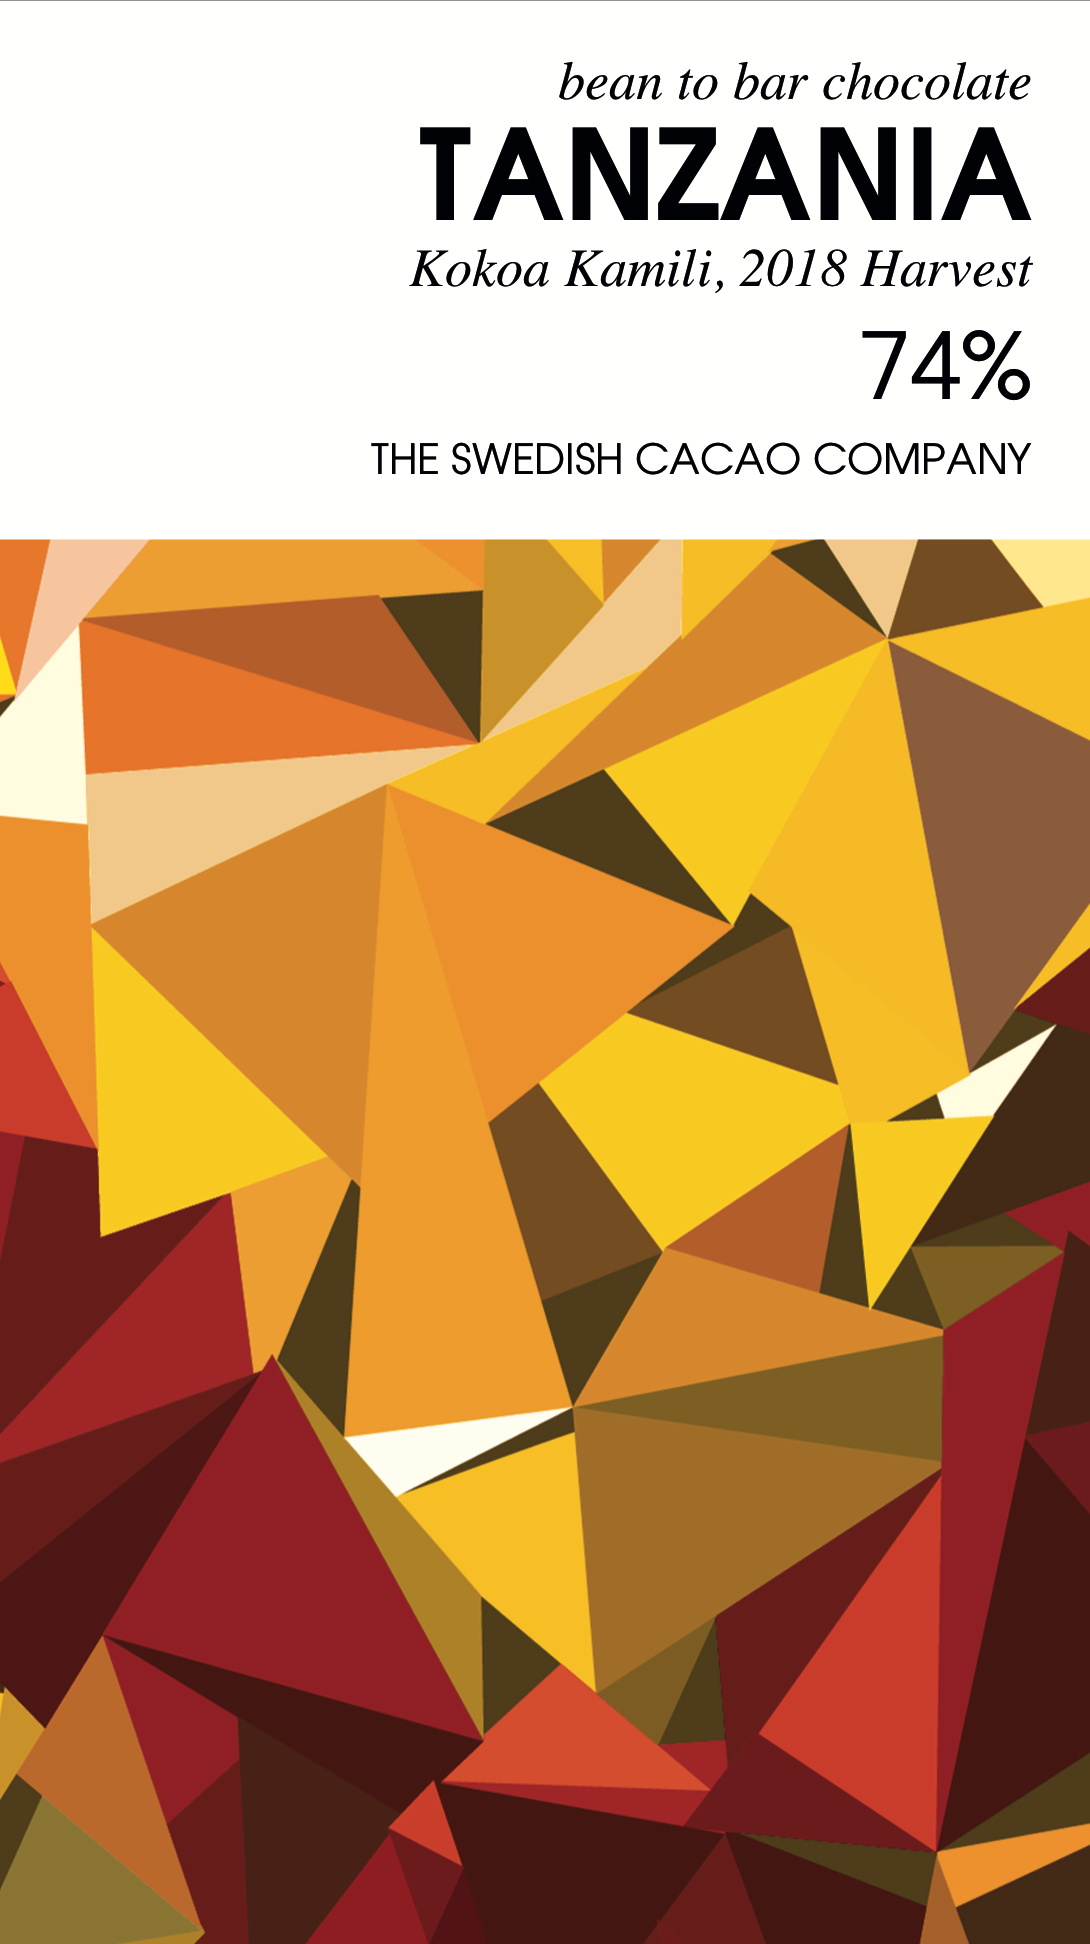 Dunkle Schokolade 74 Prozent Tansania - Svenska Kakao - Verpackung mit feometrischem Muster aus Fragmenten in rot, gelb und orange